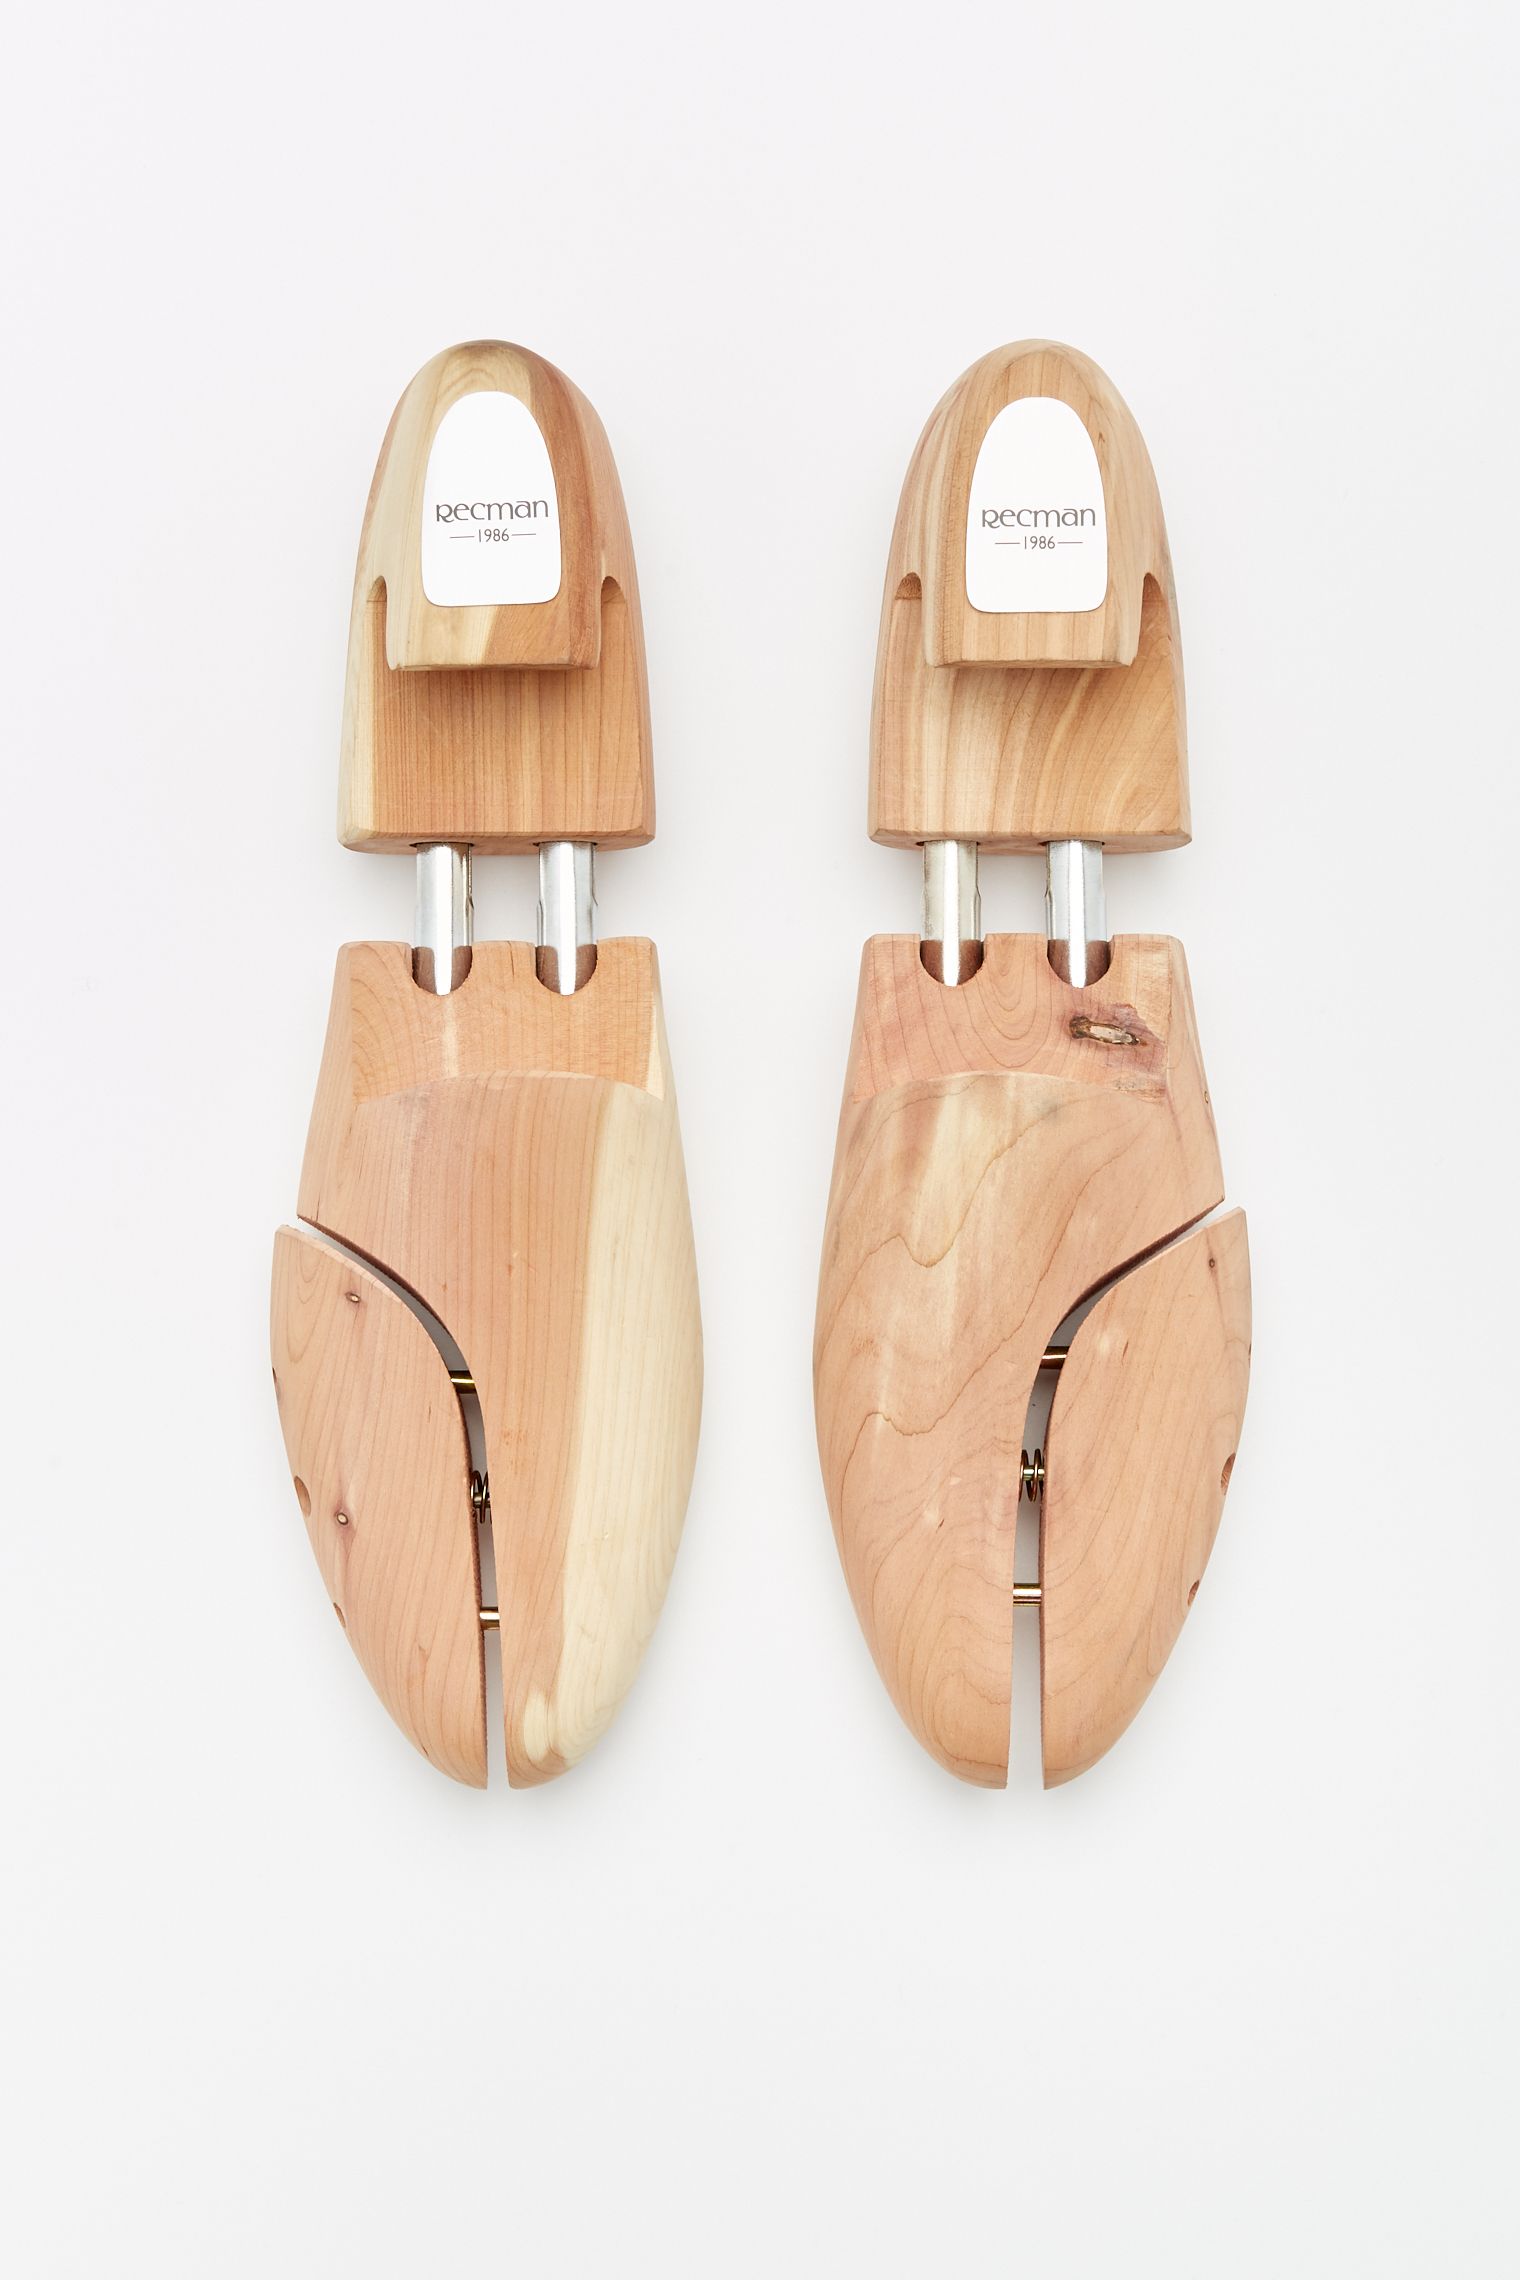 drewniane prawidła do butów marki recman